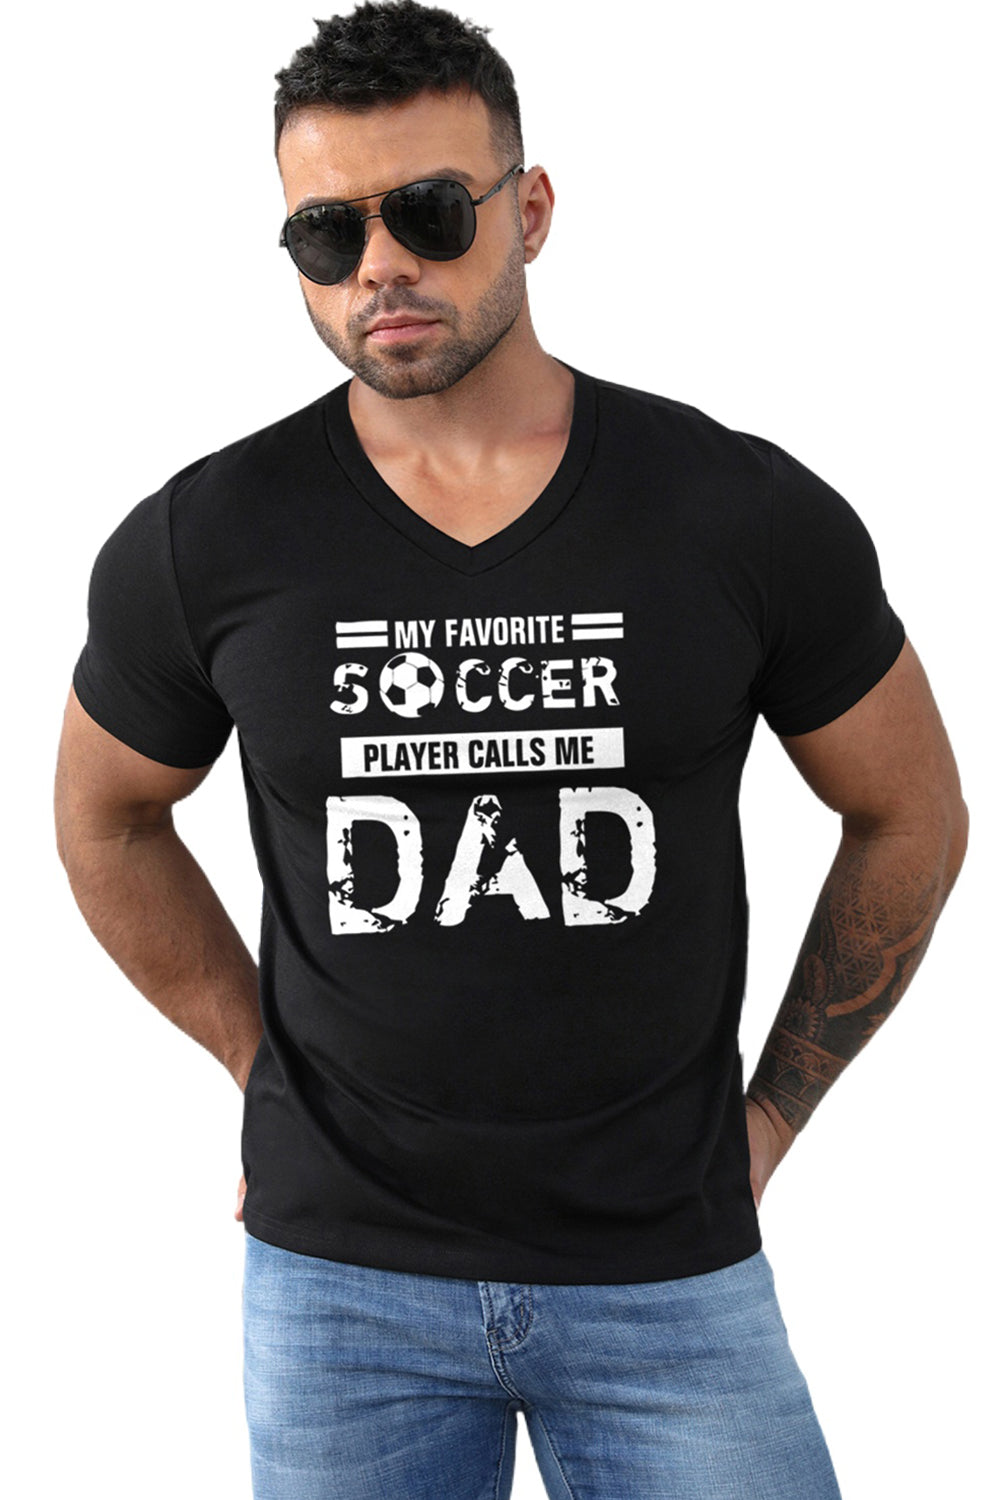 Black SOCCER DAD Letter Graphic Print V Neck T Shirt Men's Tops JT's Designer Fashion